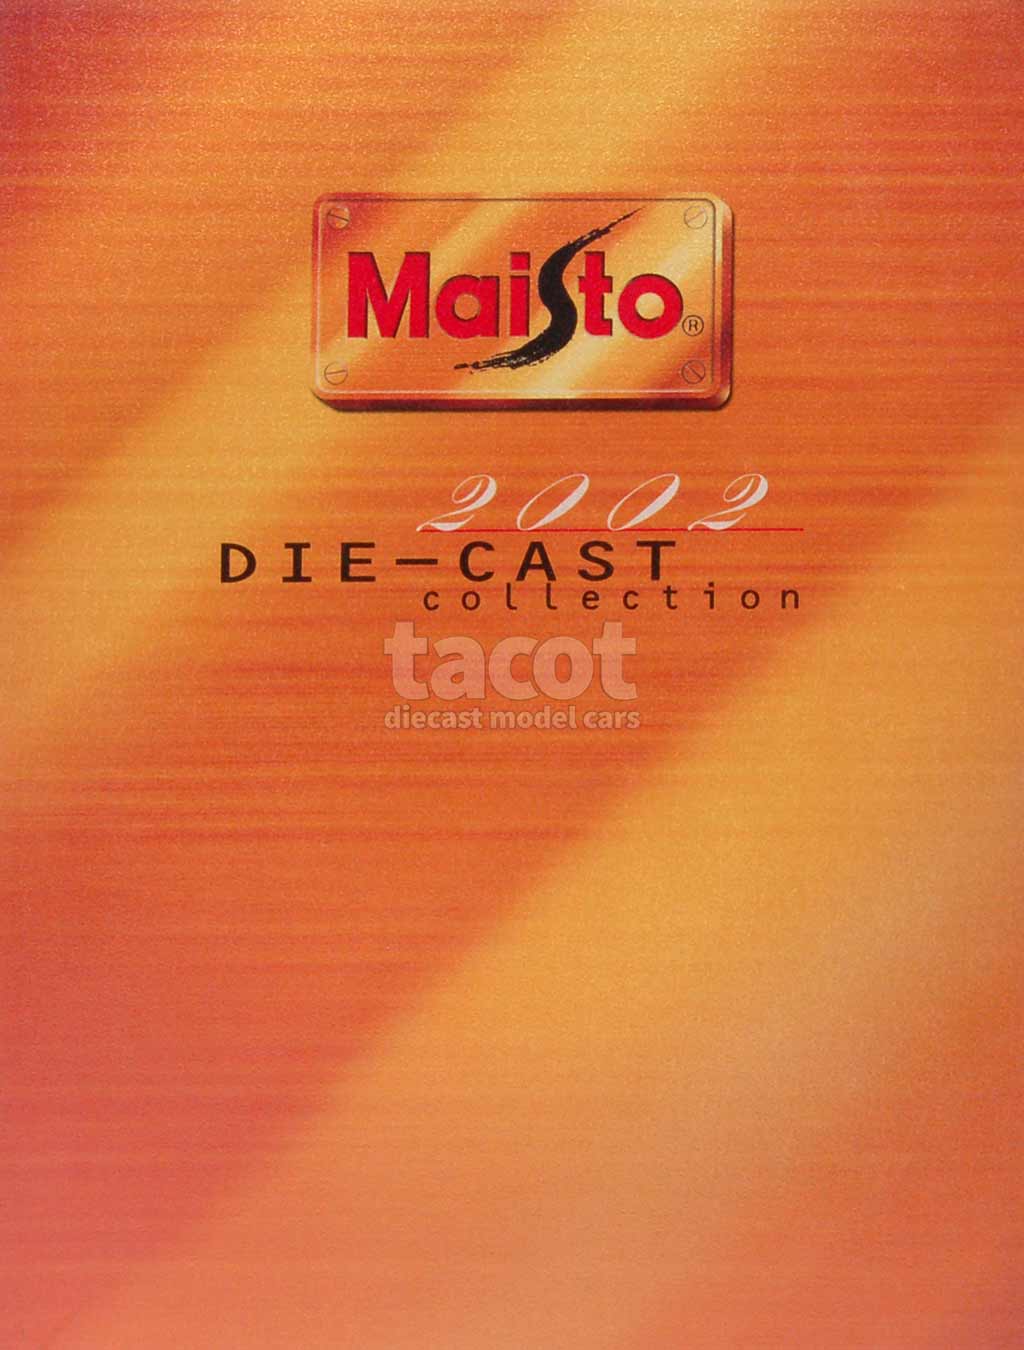 324 Catalogue Maisto 2002